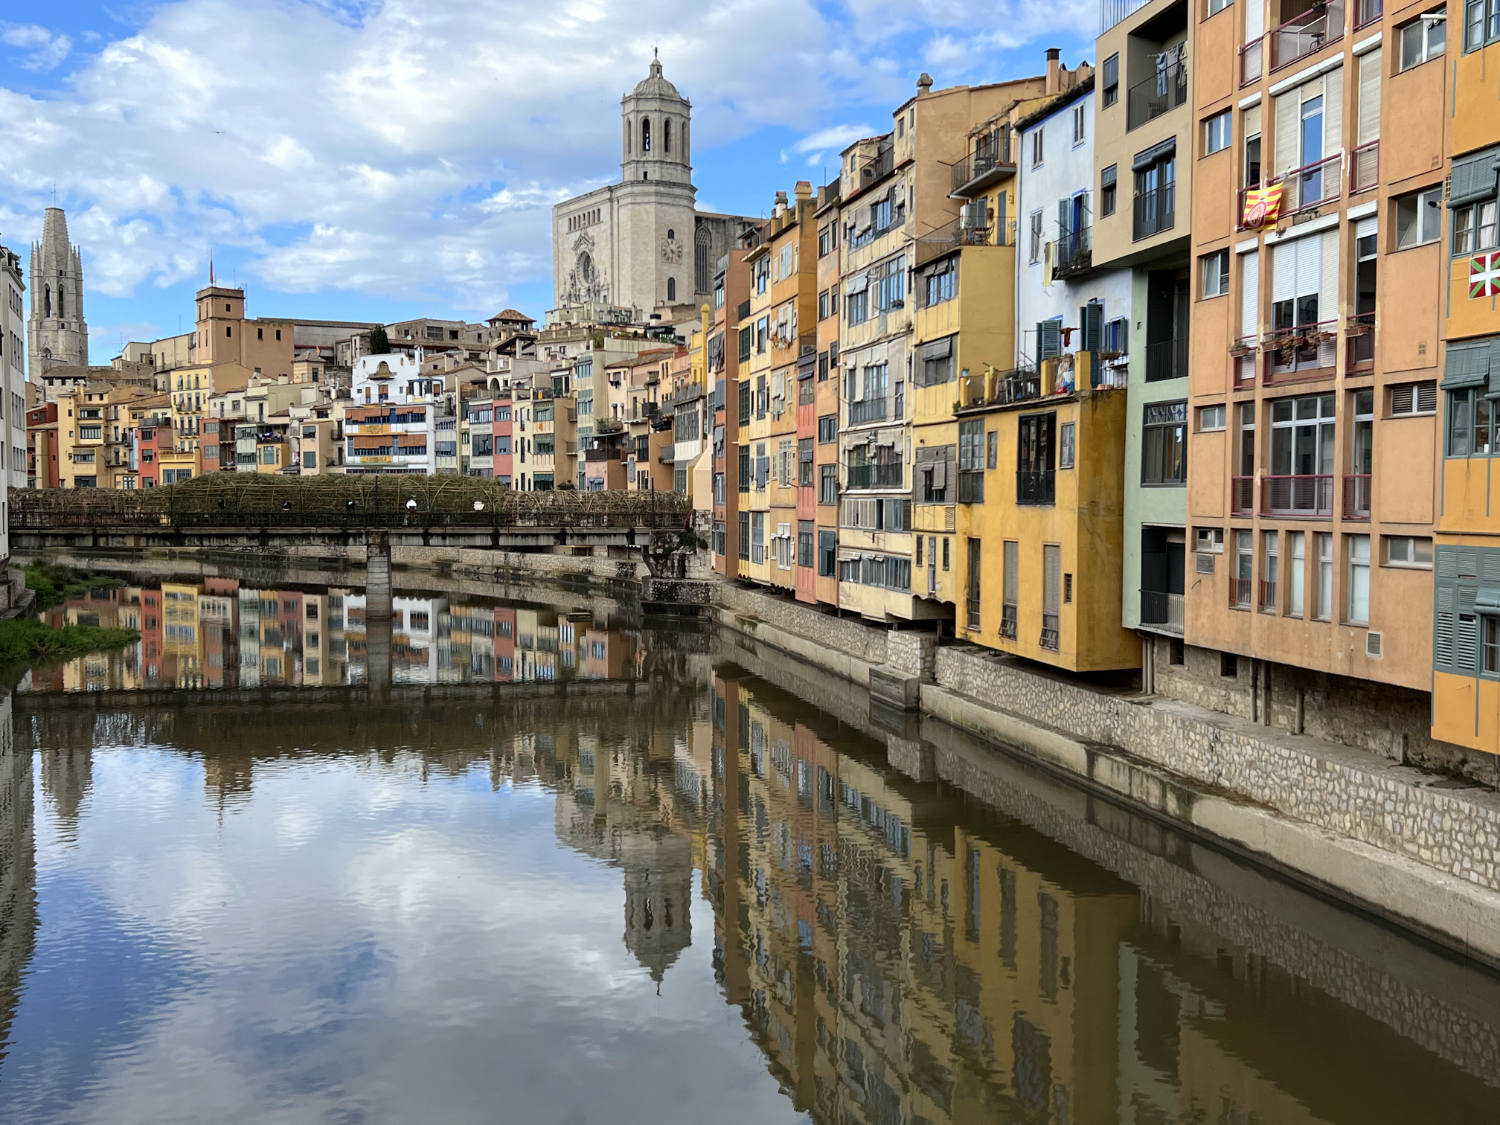 Girona laat ons versteld staan